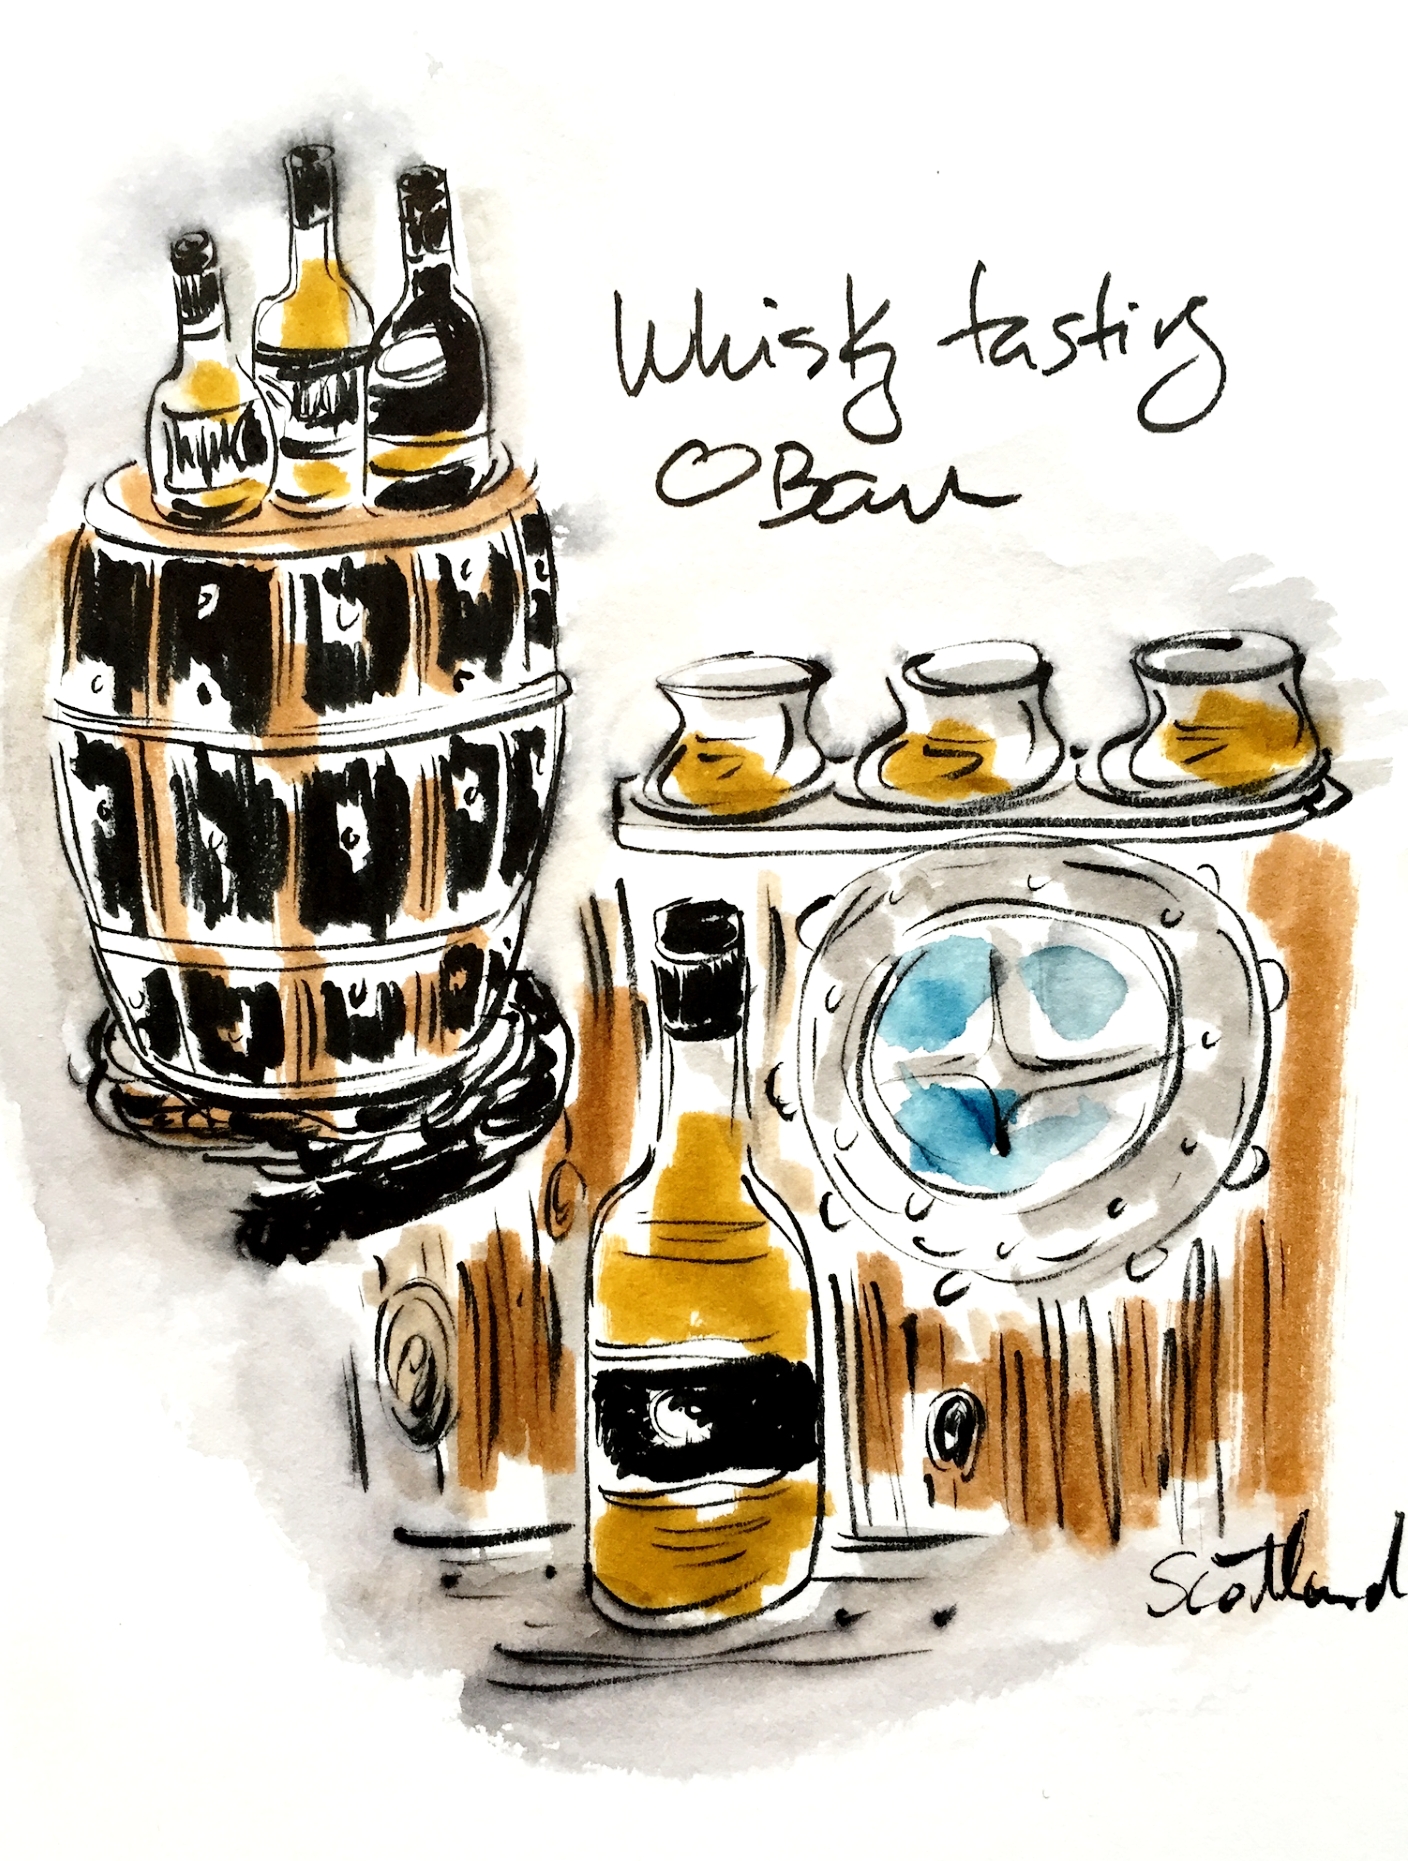  Whisky (not whiskey), Oban, Scotland 